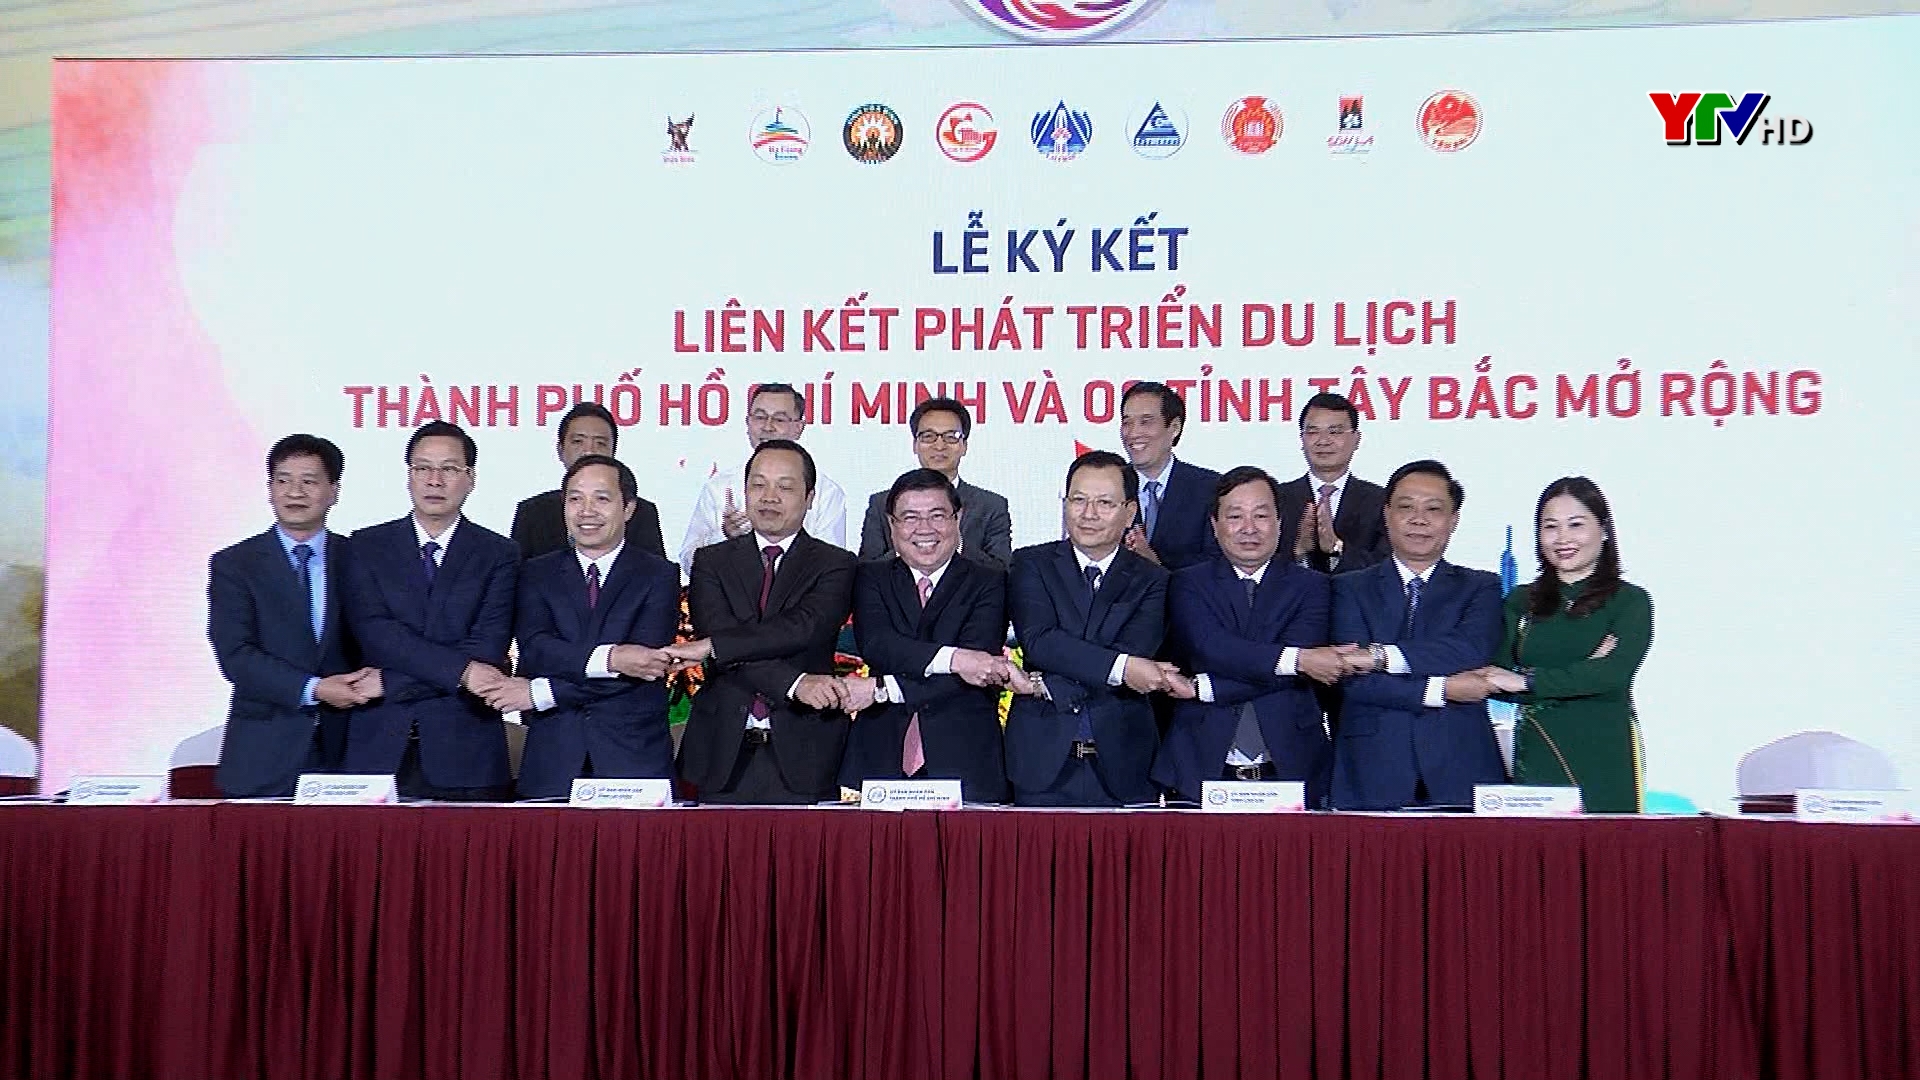 Tỉnh Yên Bái tham dự Hội nghị liên kết phát triển du lịch giữa TP Hồ Chí Minh với 8 tỉnh vùng Tây Bắc